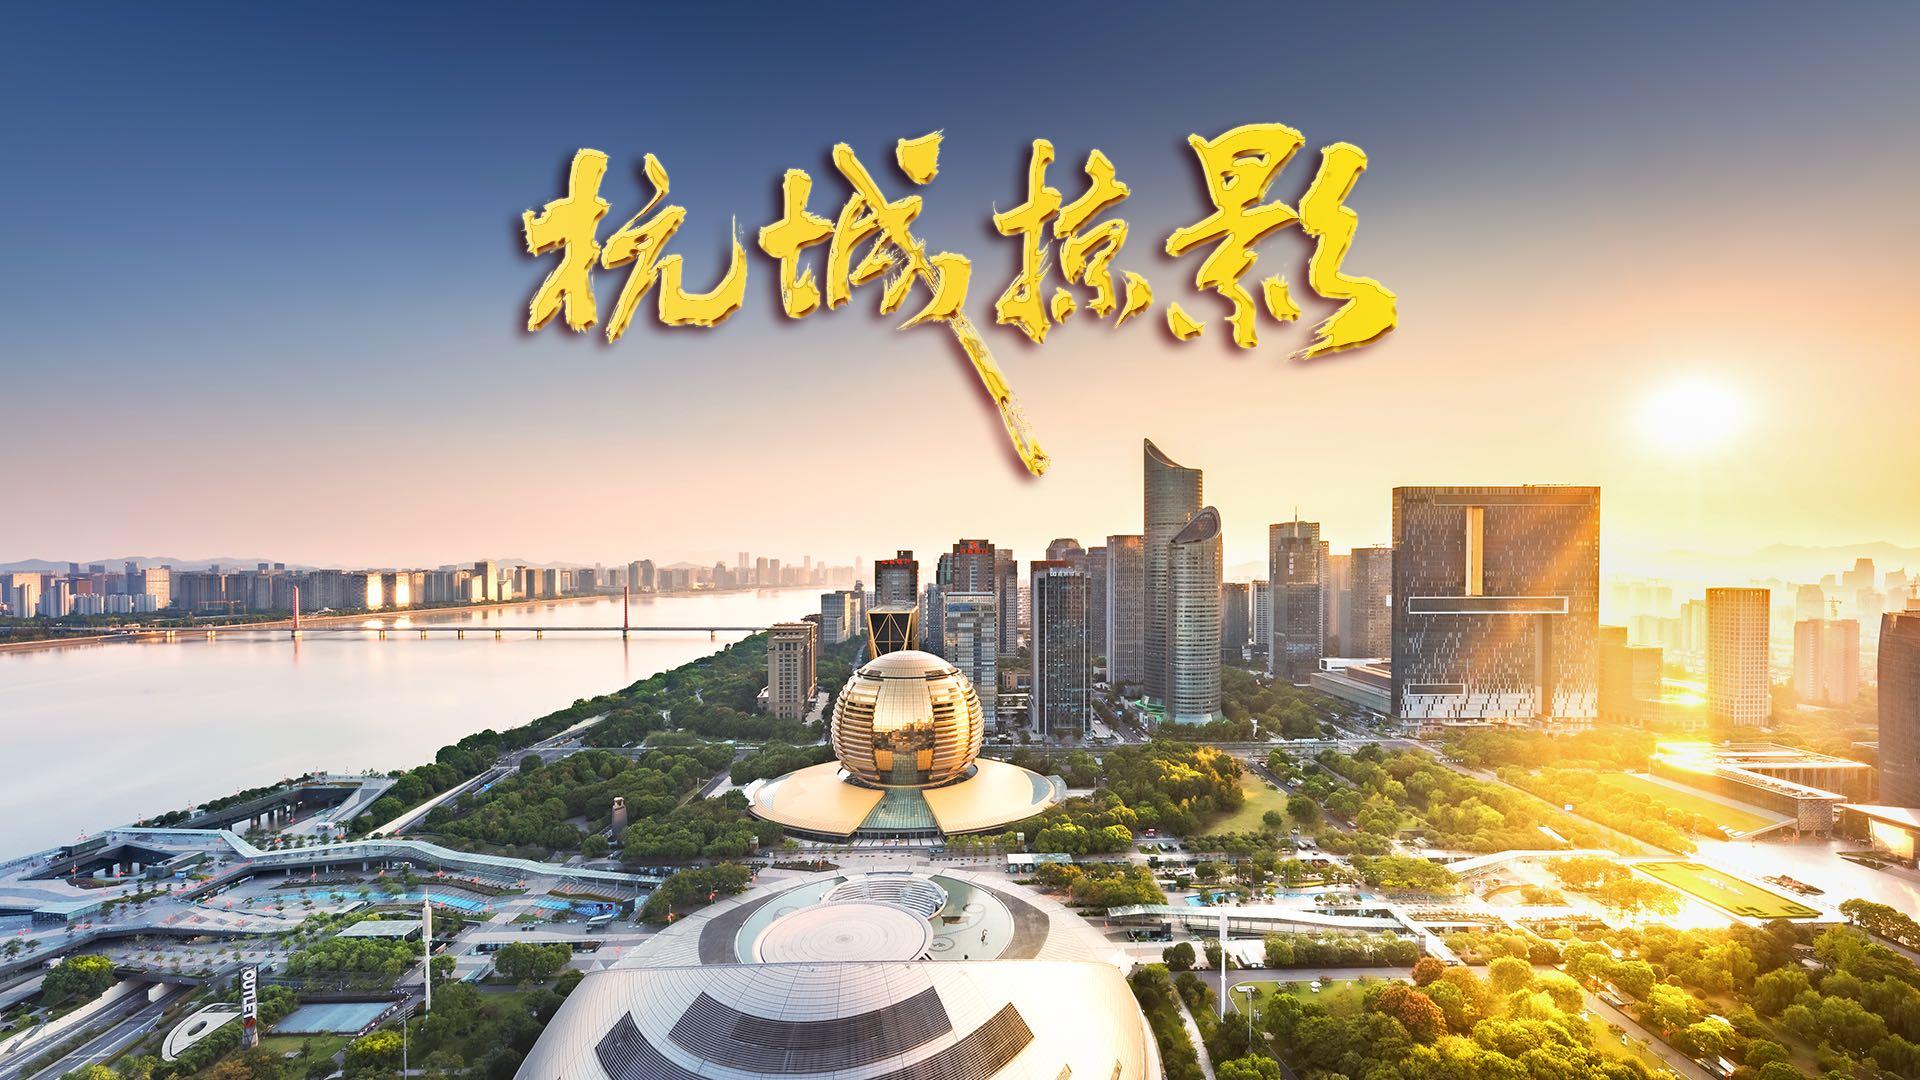 《杭城掠影》两分半钟，带你看不一样的杭州！